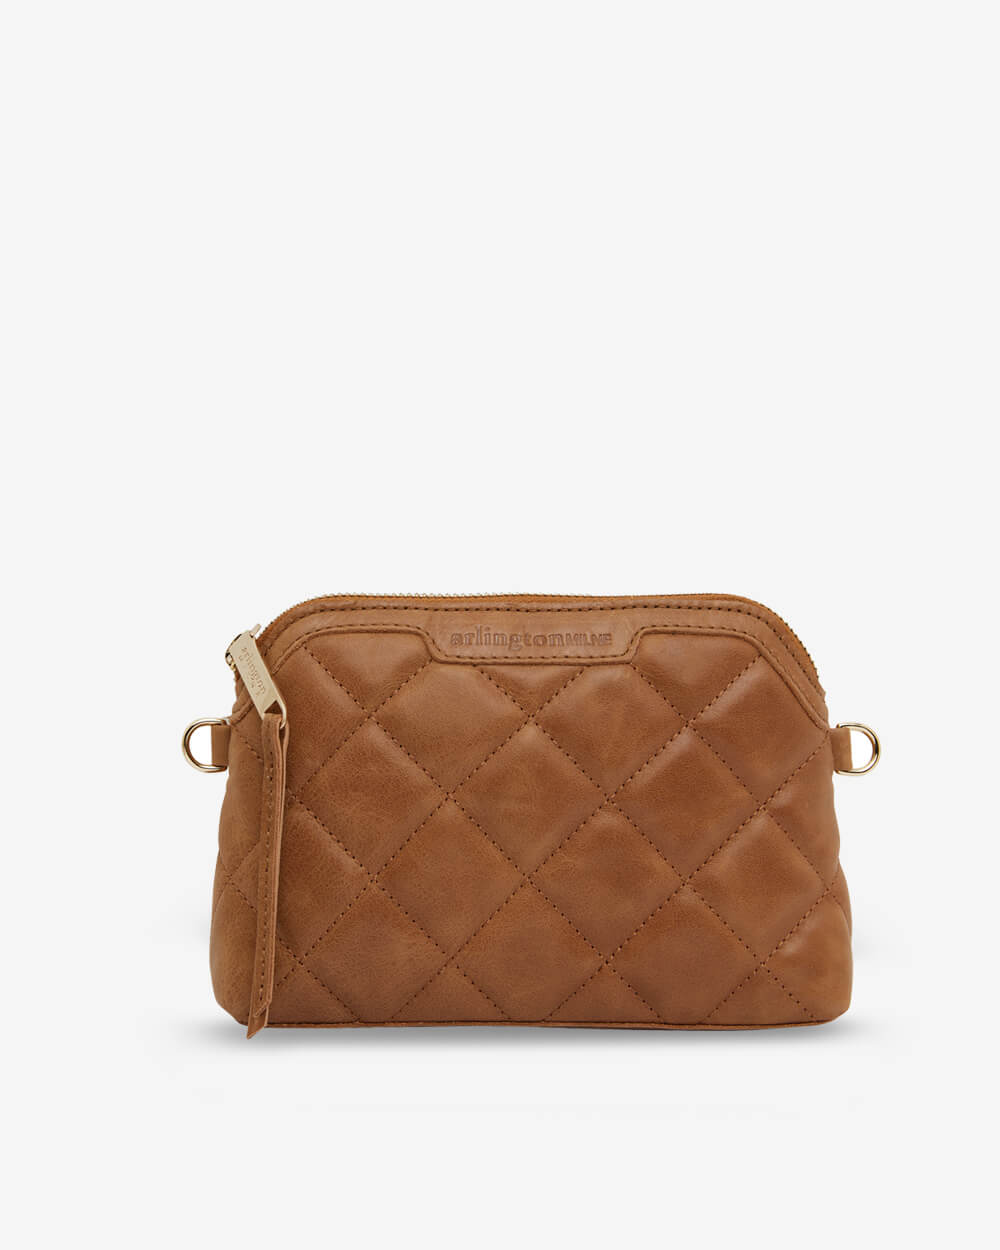 Calvin Klein bag ❀ very spacious ❀ magnetic... - Depop